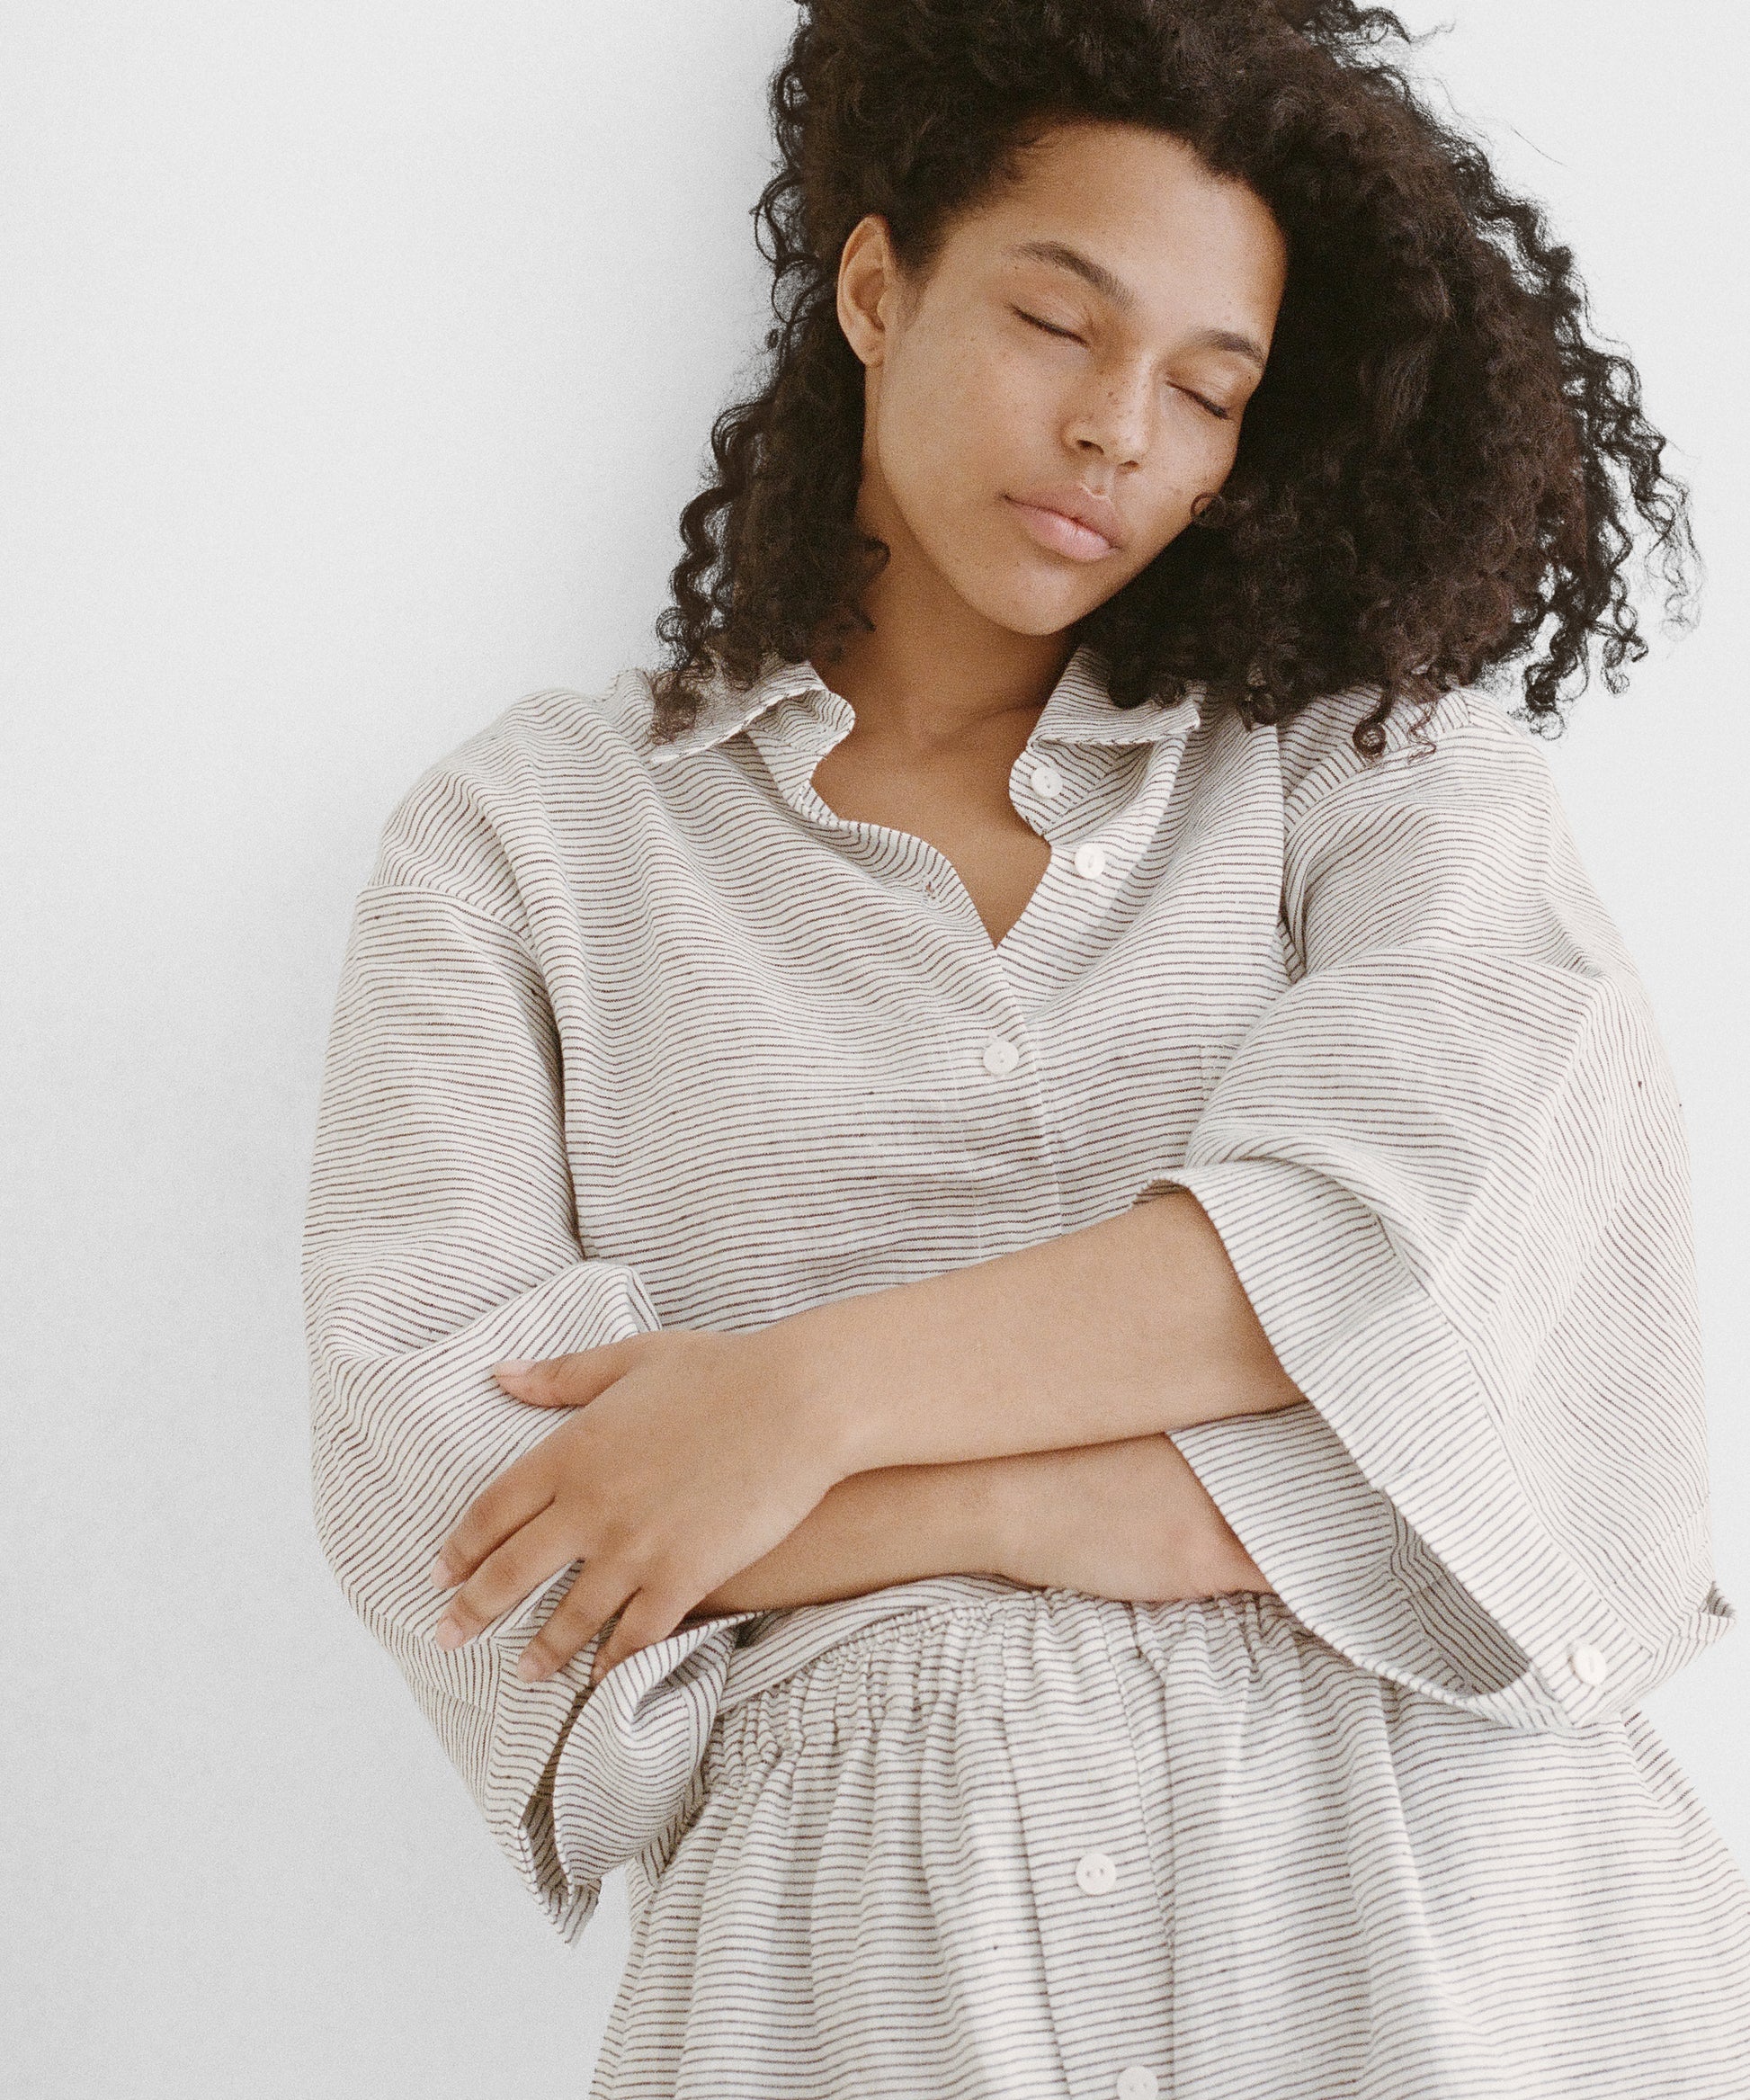 Linen Pajama Set With Pockets, Linen Suit Set, Plus Size Linen Set 